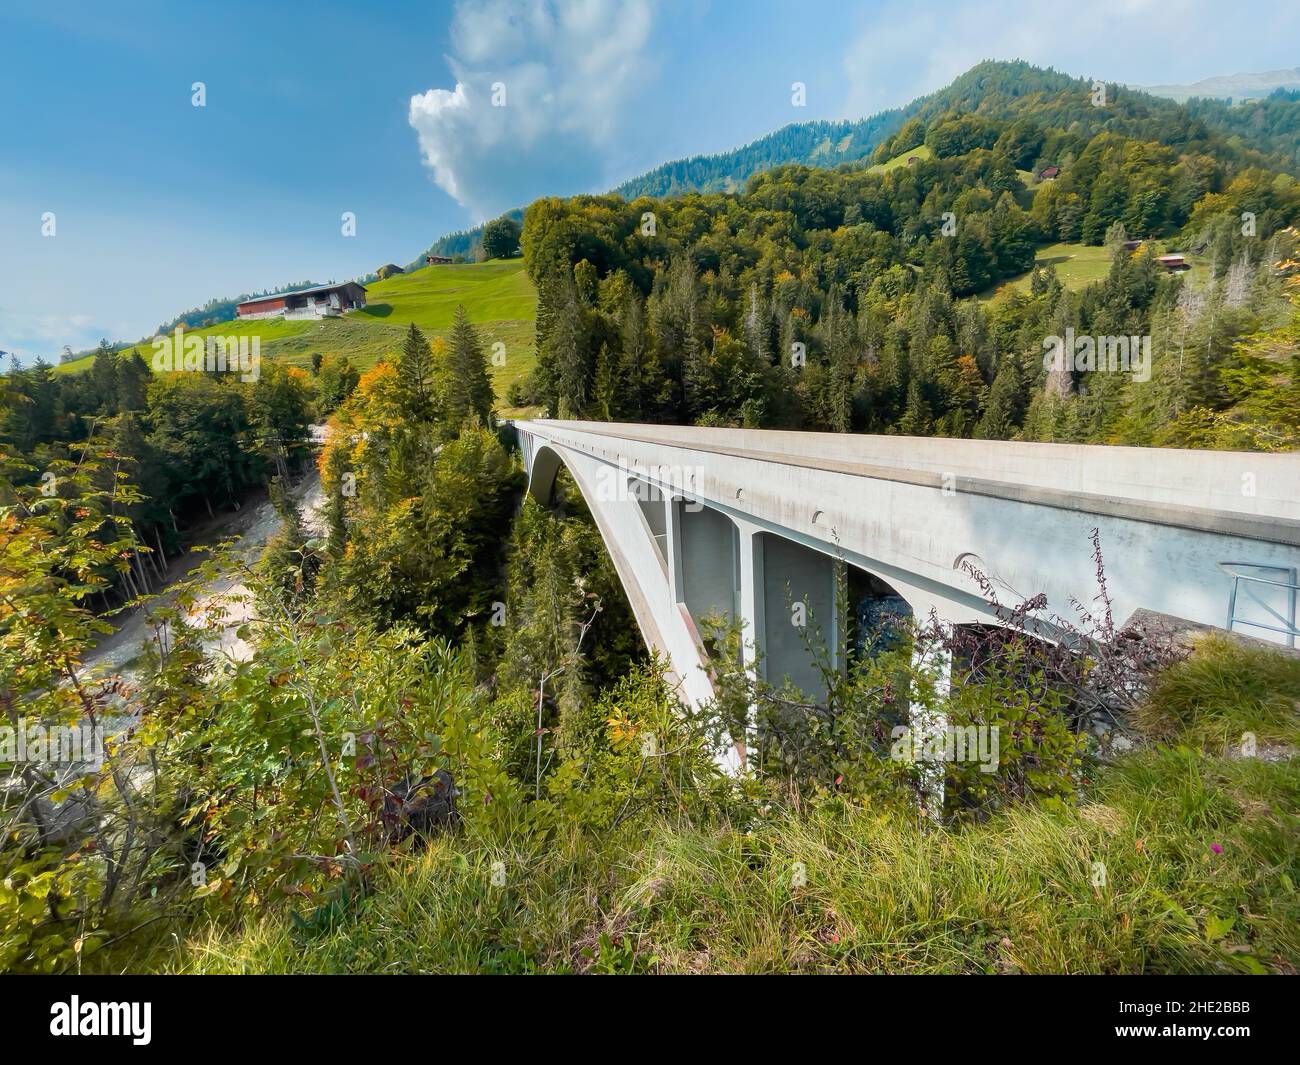 Schiers, Suisse - 27 septembre 2021 : célèbre site historique international de génie civil, pont Salginatobel, arche en béton armé brid Banque D'Images